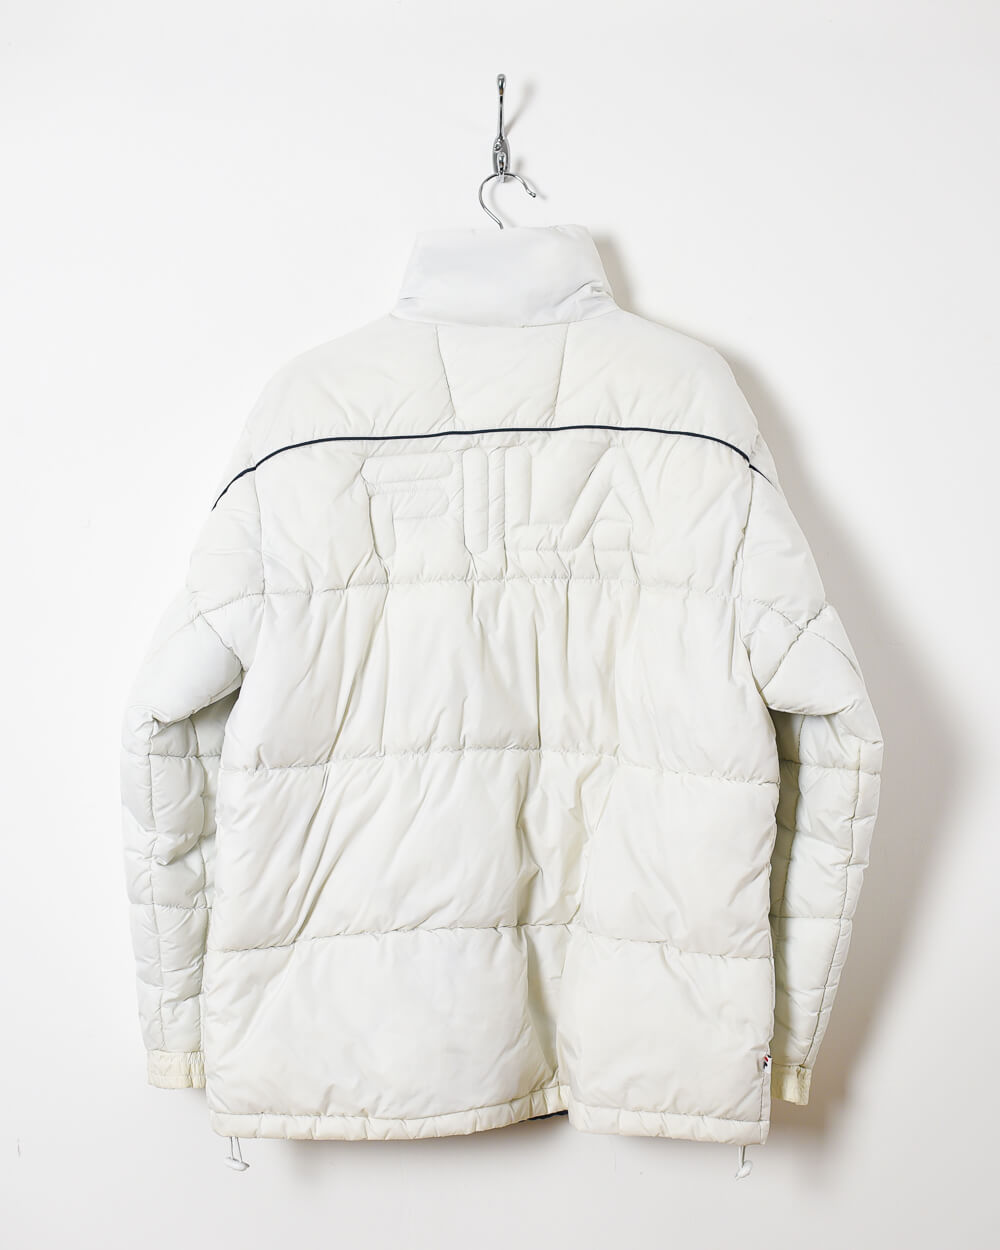 White Fila Puffer Jacket -   Large